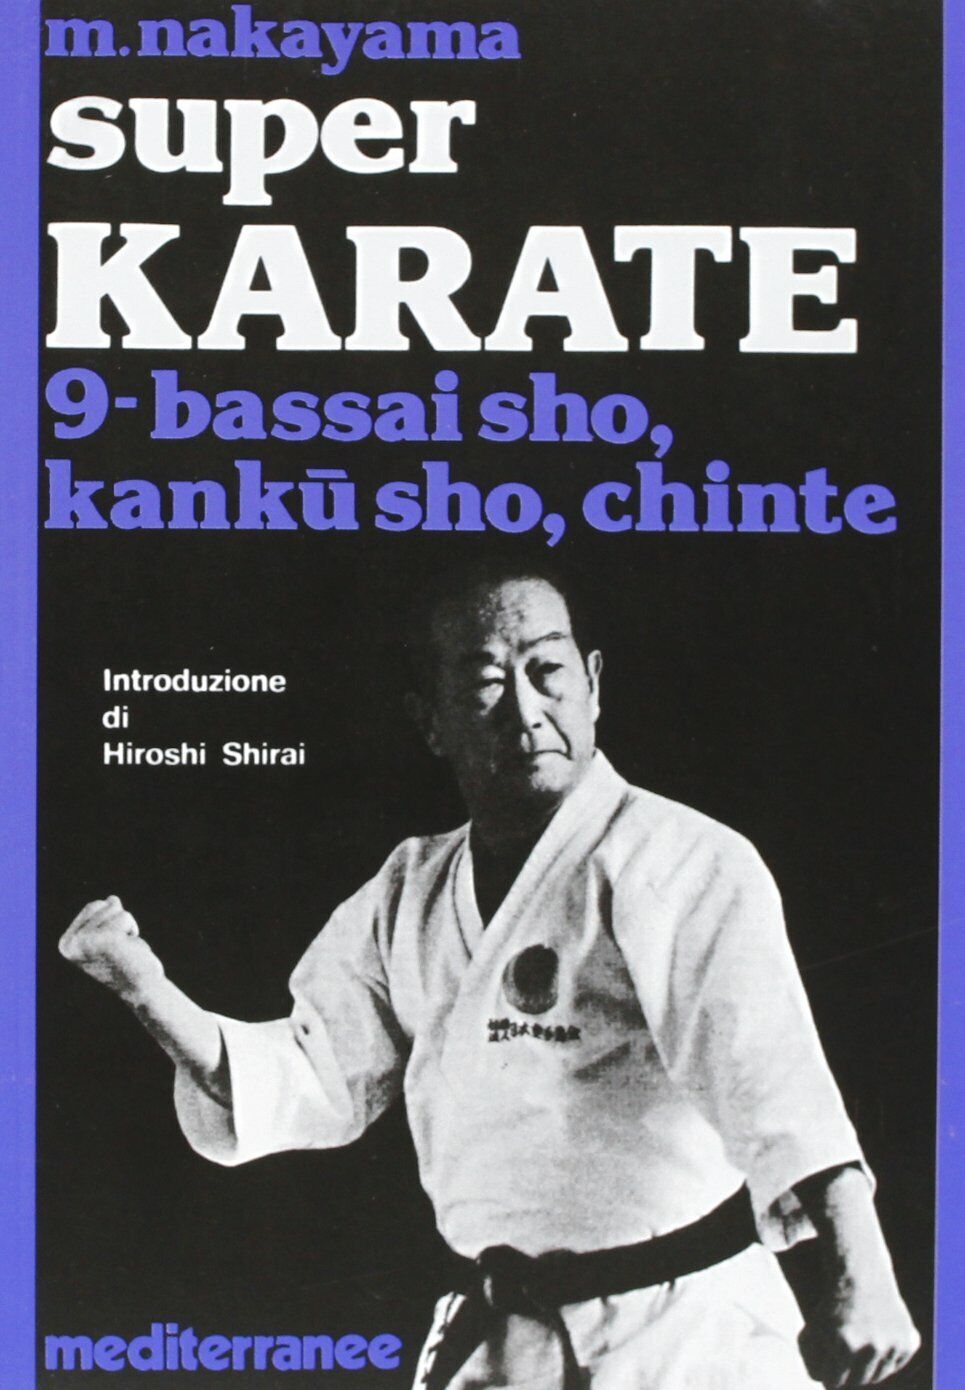 Super karate. Bassai Sho, Kanku Sho, Chinte (Vol. 9) - Masatoshi Nakayama - 1987